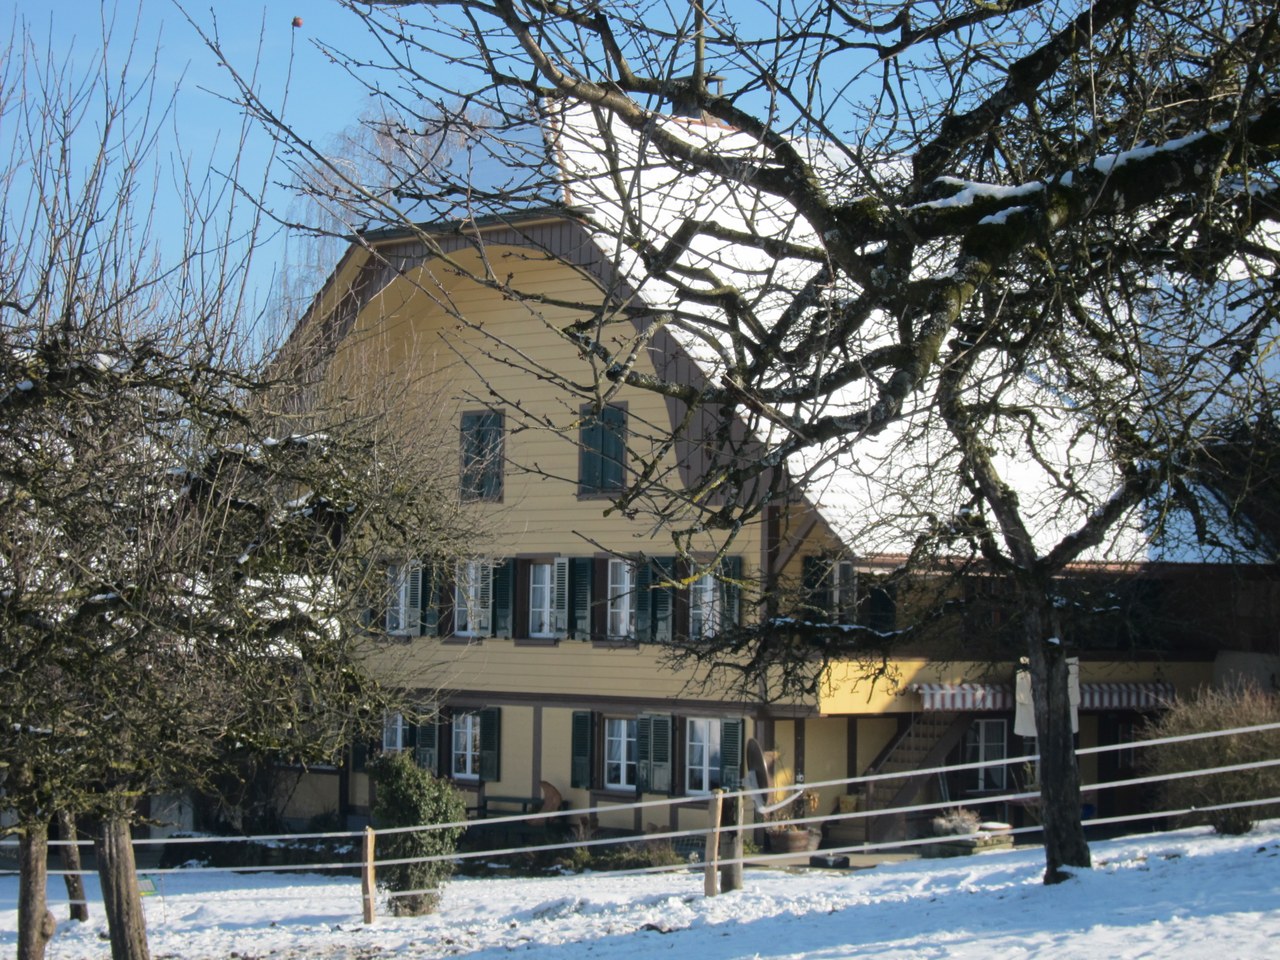 Das Foto zeigt den Biobetrieb König. Zu sehen ist ein stattliches Bauernhaus mit grossem Satteldach vor eine verschneiten Wiese